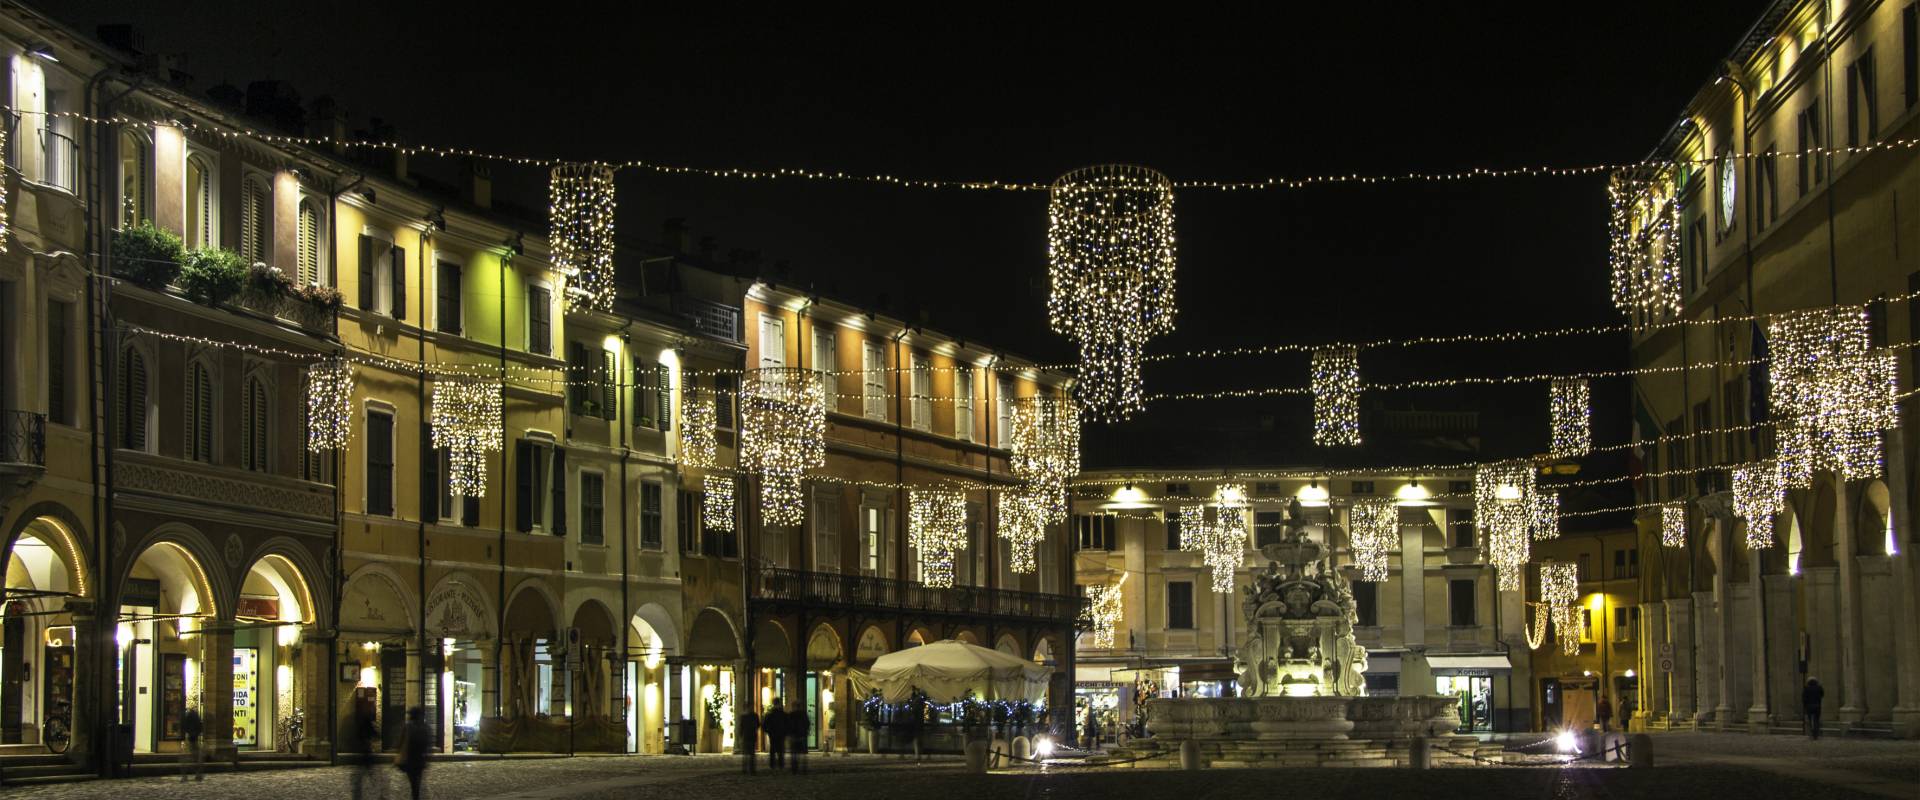 Piazza del Popolo - periodo natalizio 4 photo by Pierpaoloturchi